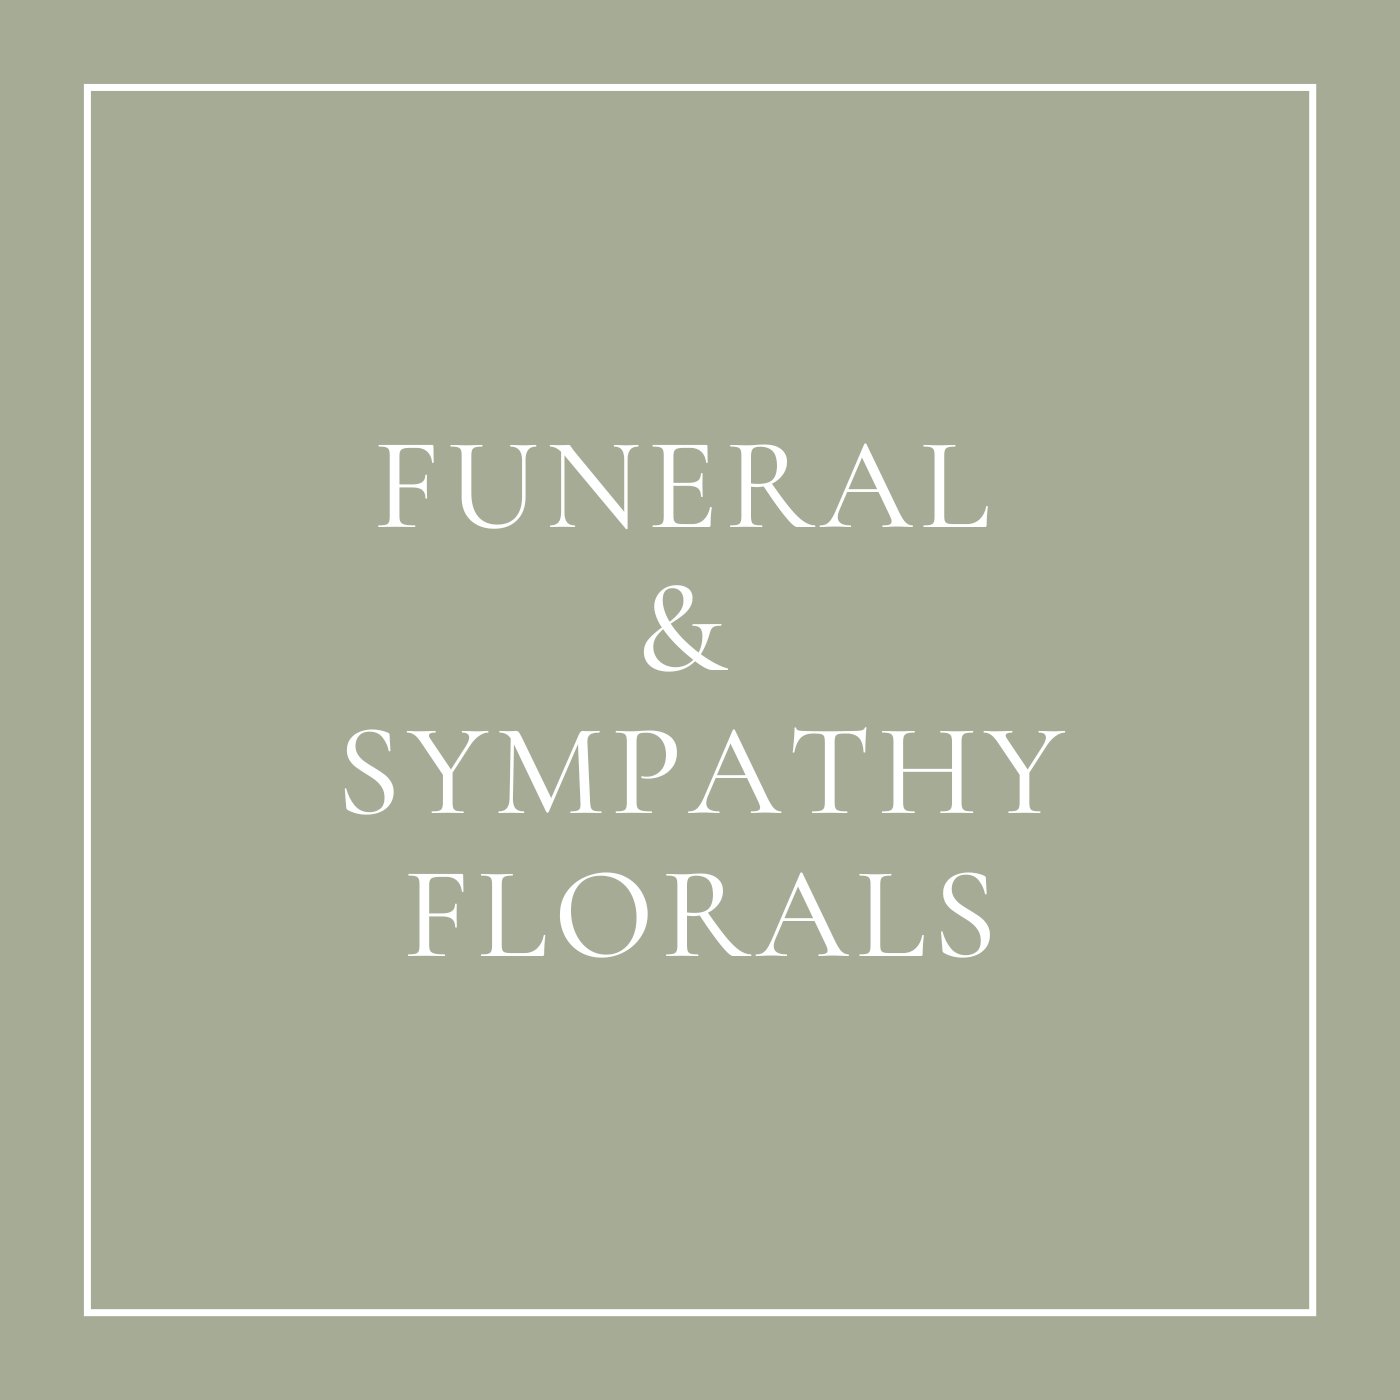 Funeral & Sympathy Florals